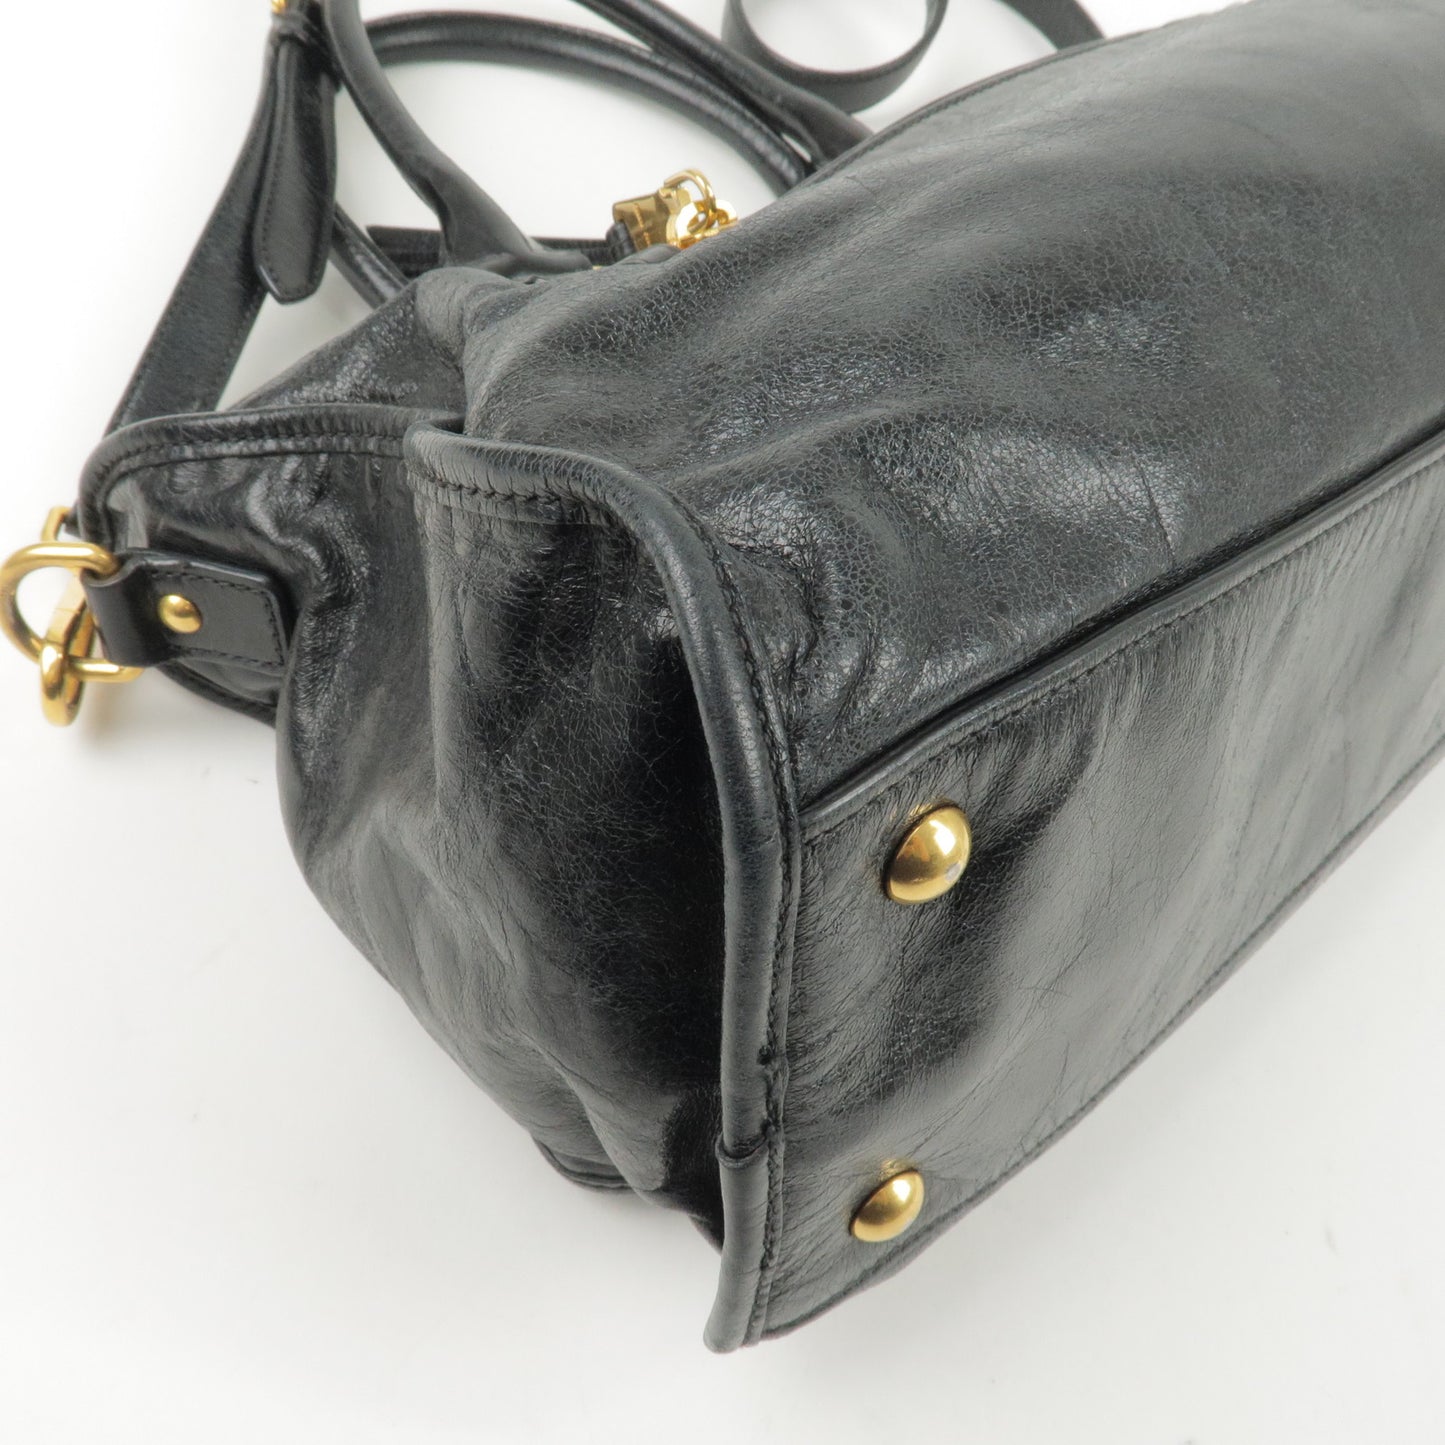 MIU MIU Leather 2Way Shoulder Bag Hand Bag Black